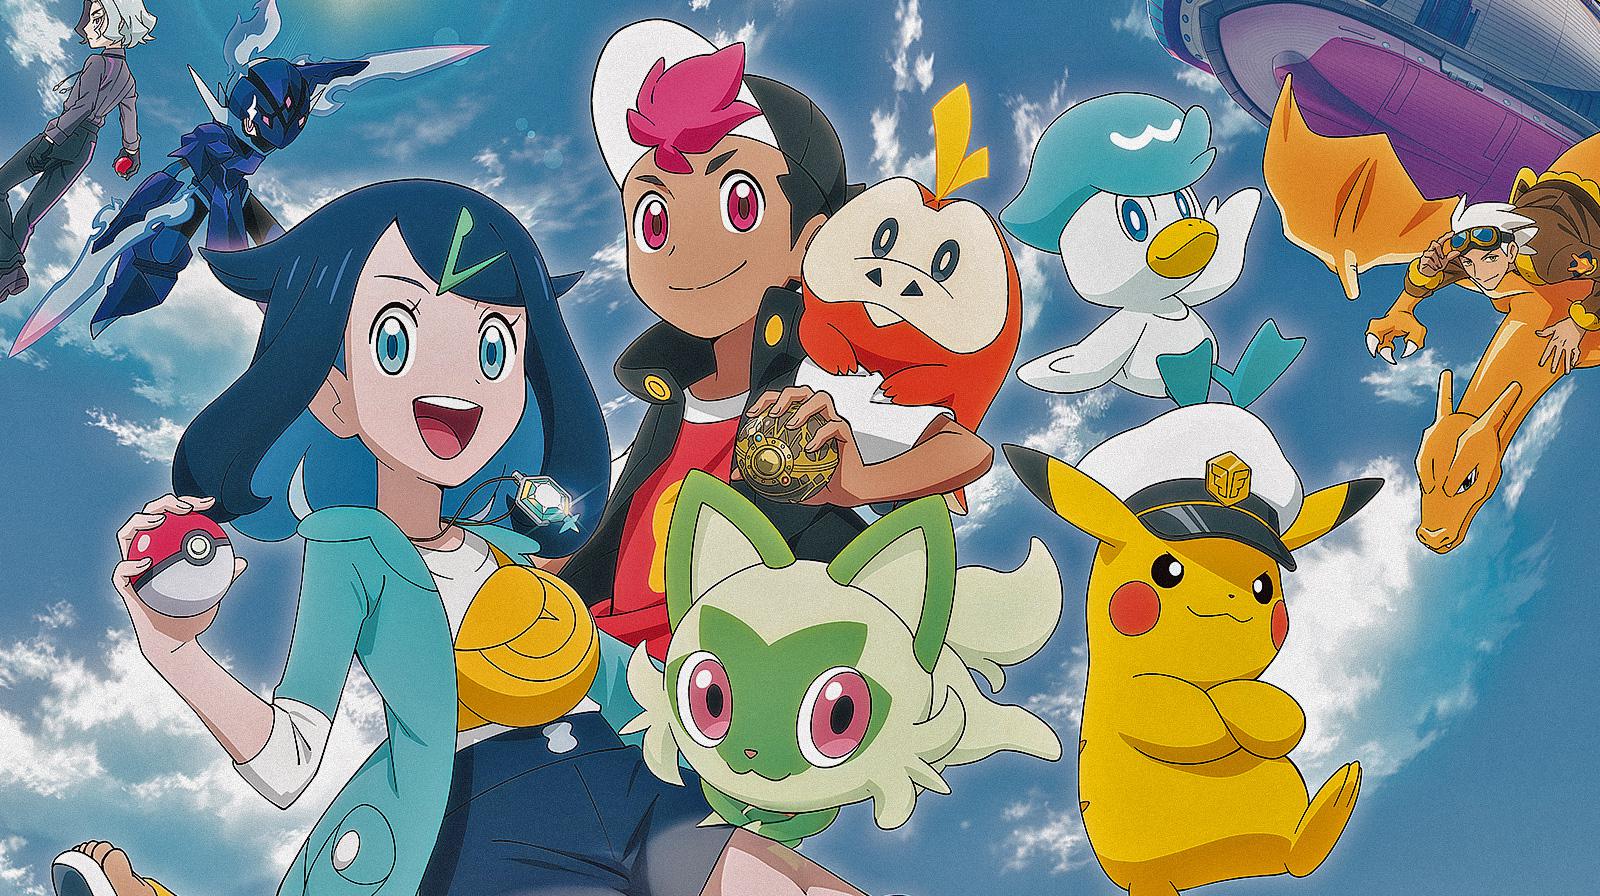 Orizzonti Pokémon: abbiamo visto in anteprima i primi 4 episodi